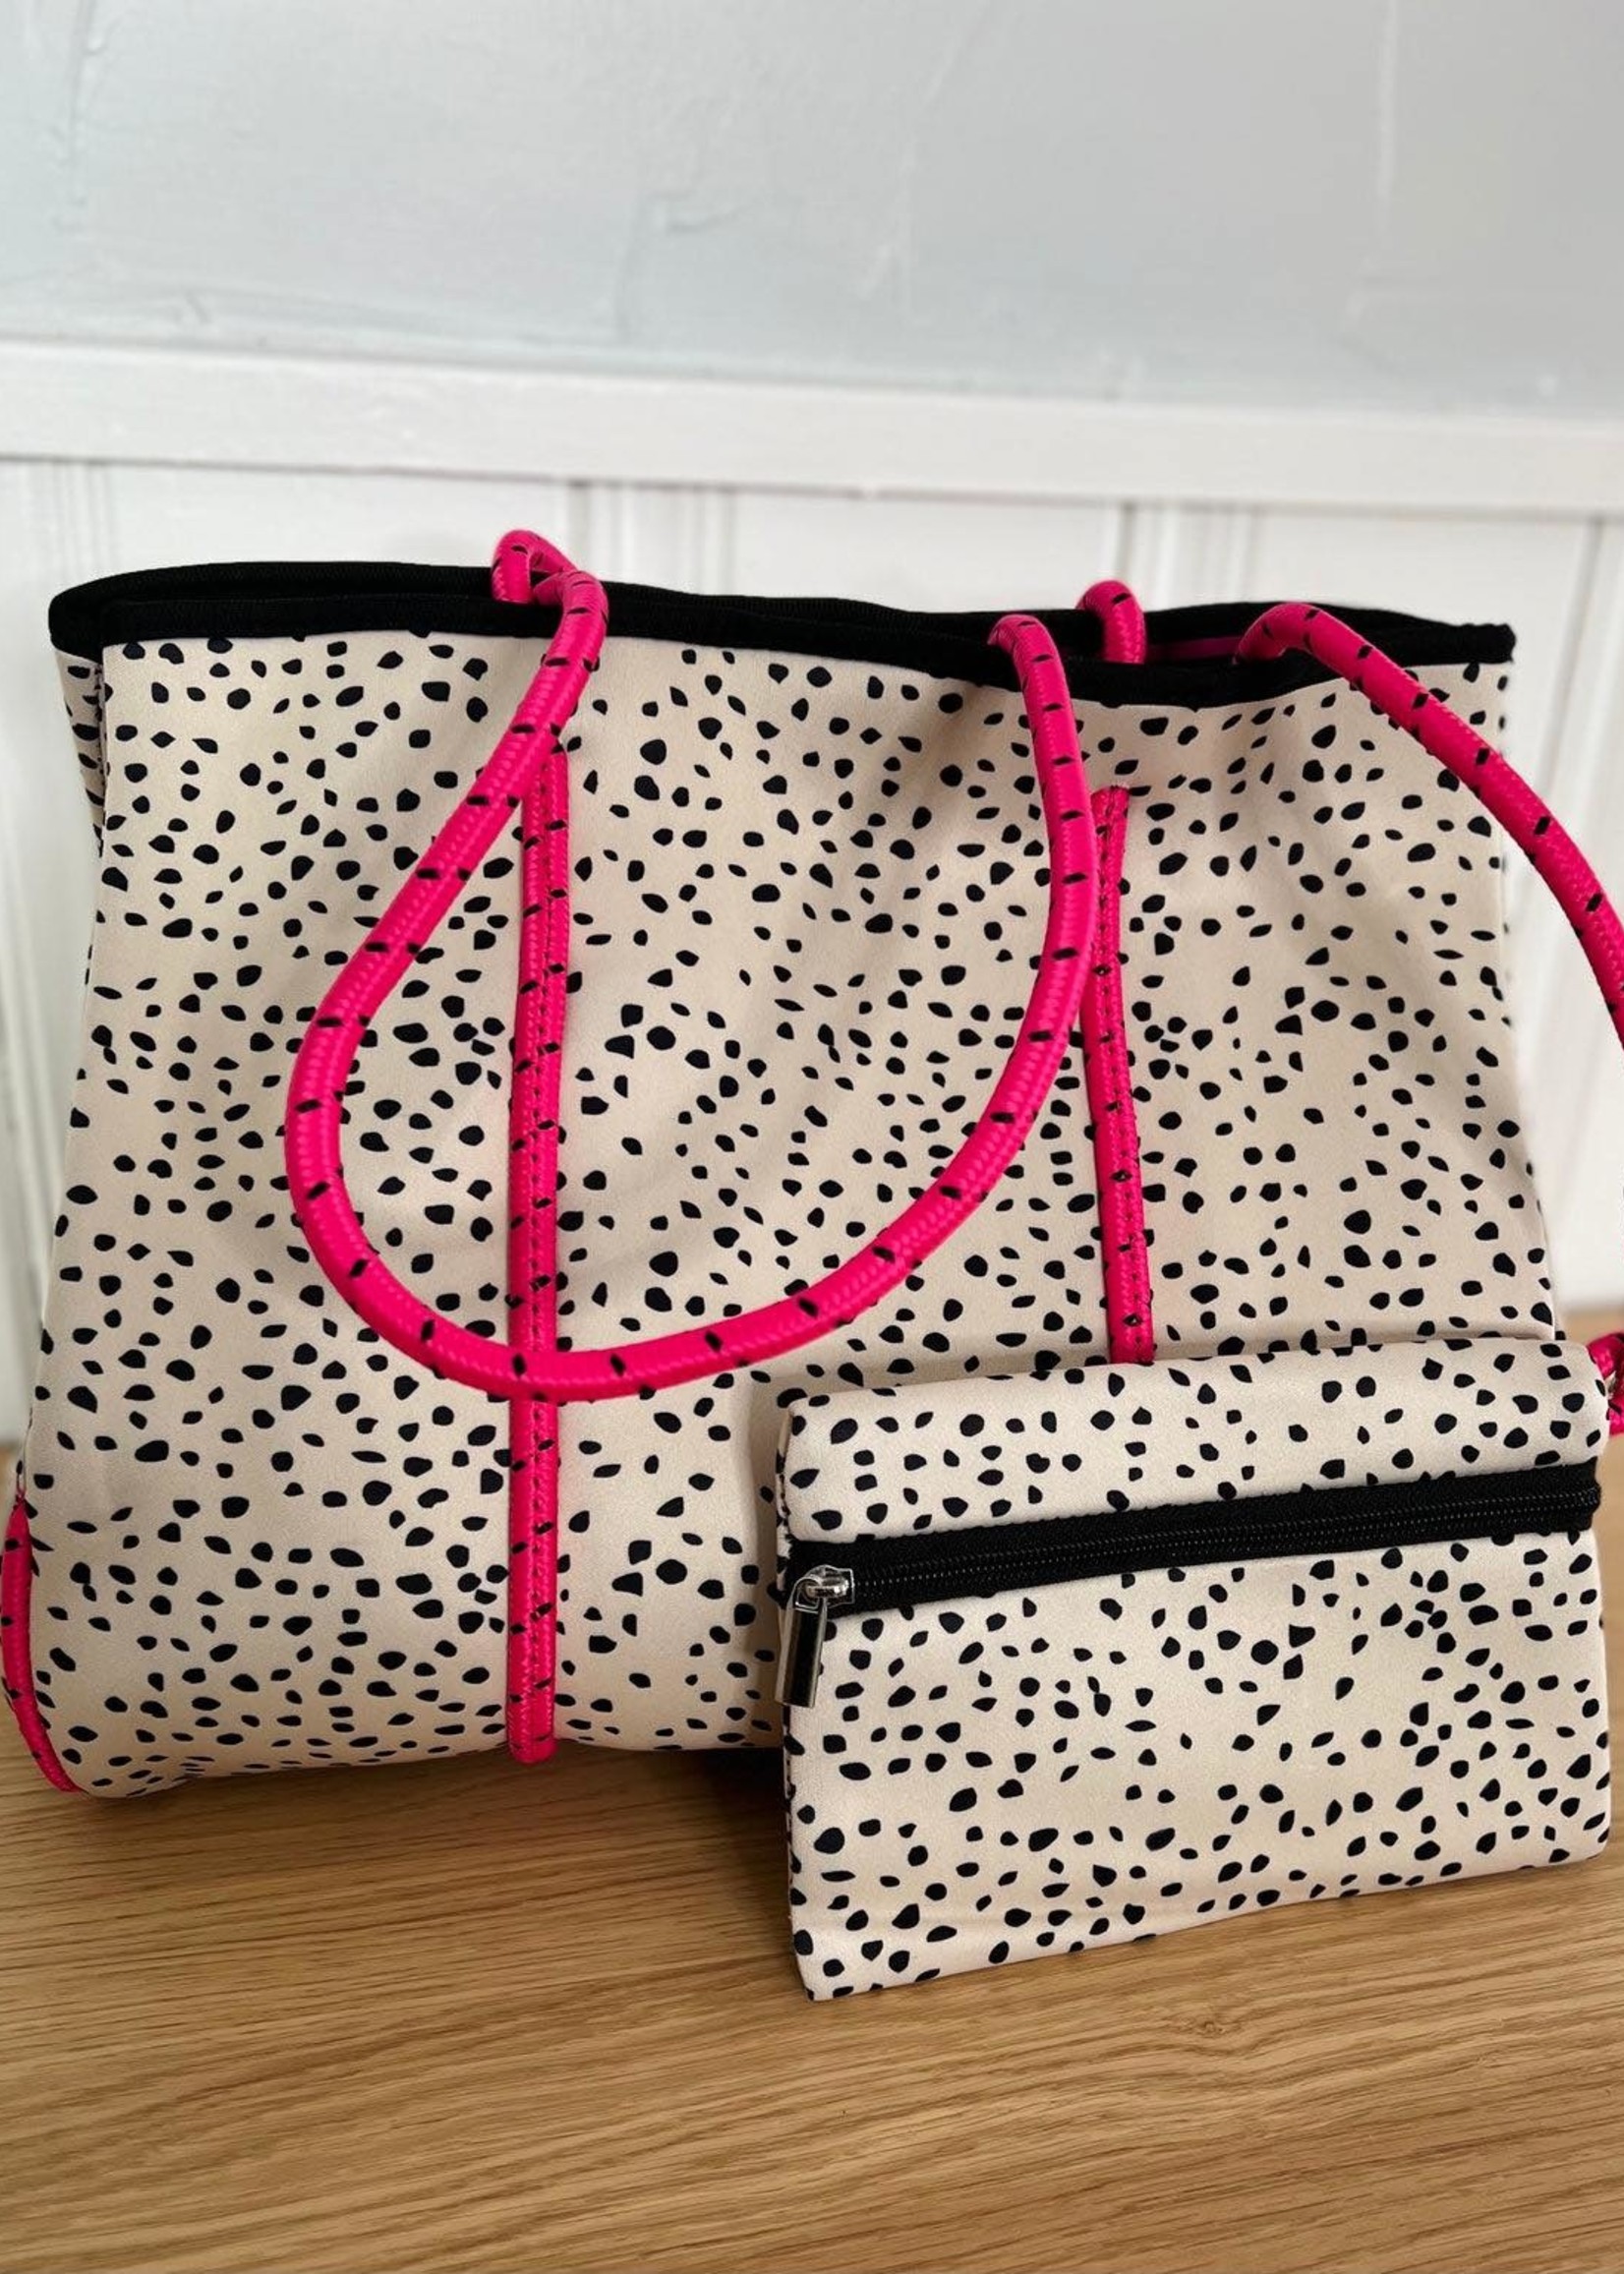 Dalmation and pink neoprene bag